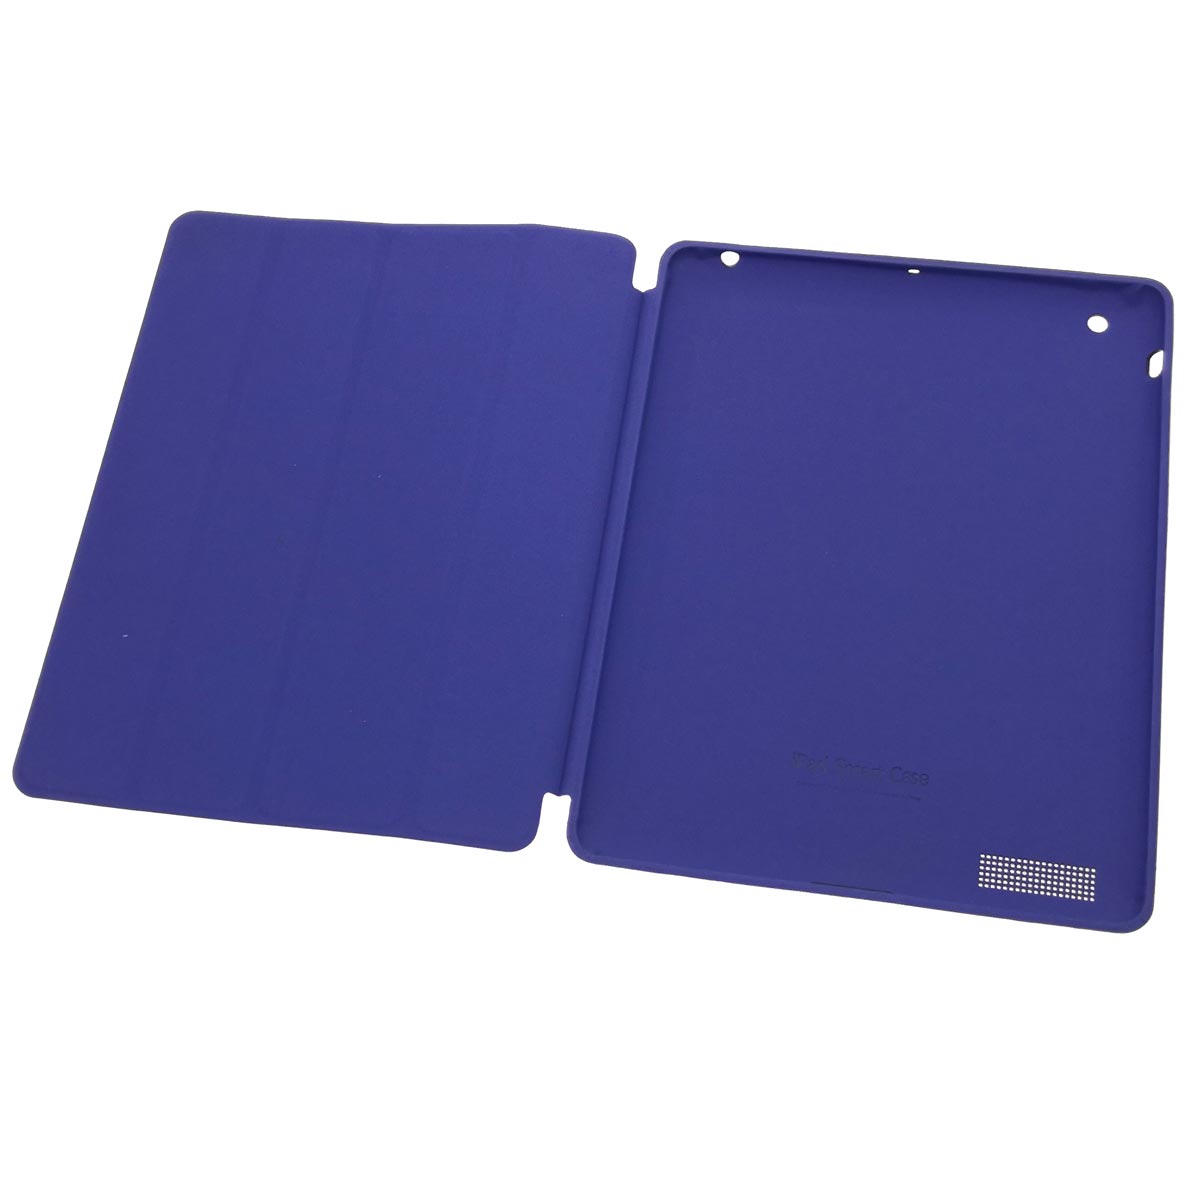 Чехол книжка SMART CASE для APPLE iPad 2, 3, 4, диагональ 9.7", экокожа, цвет фиолетовый